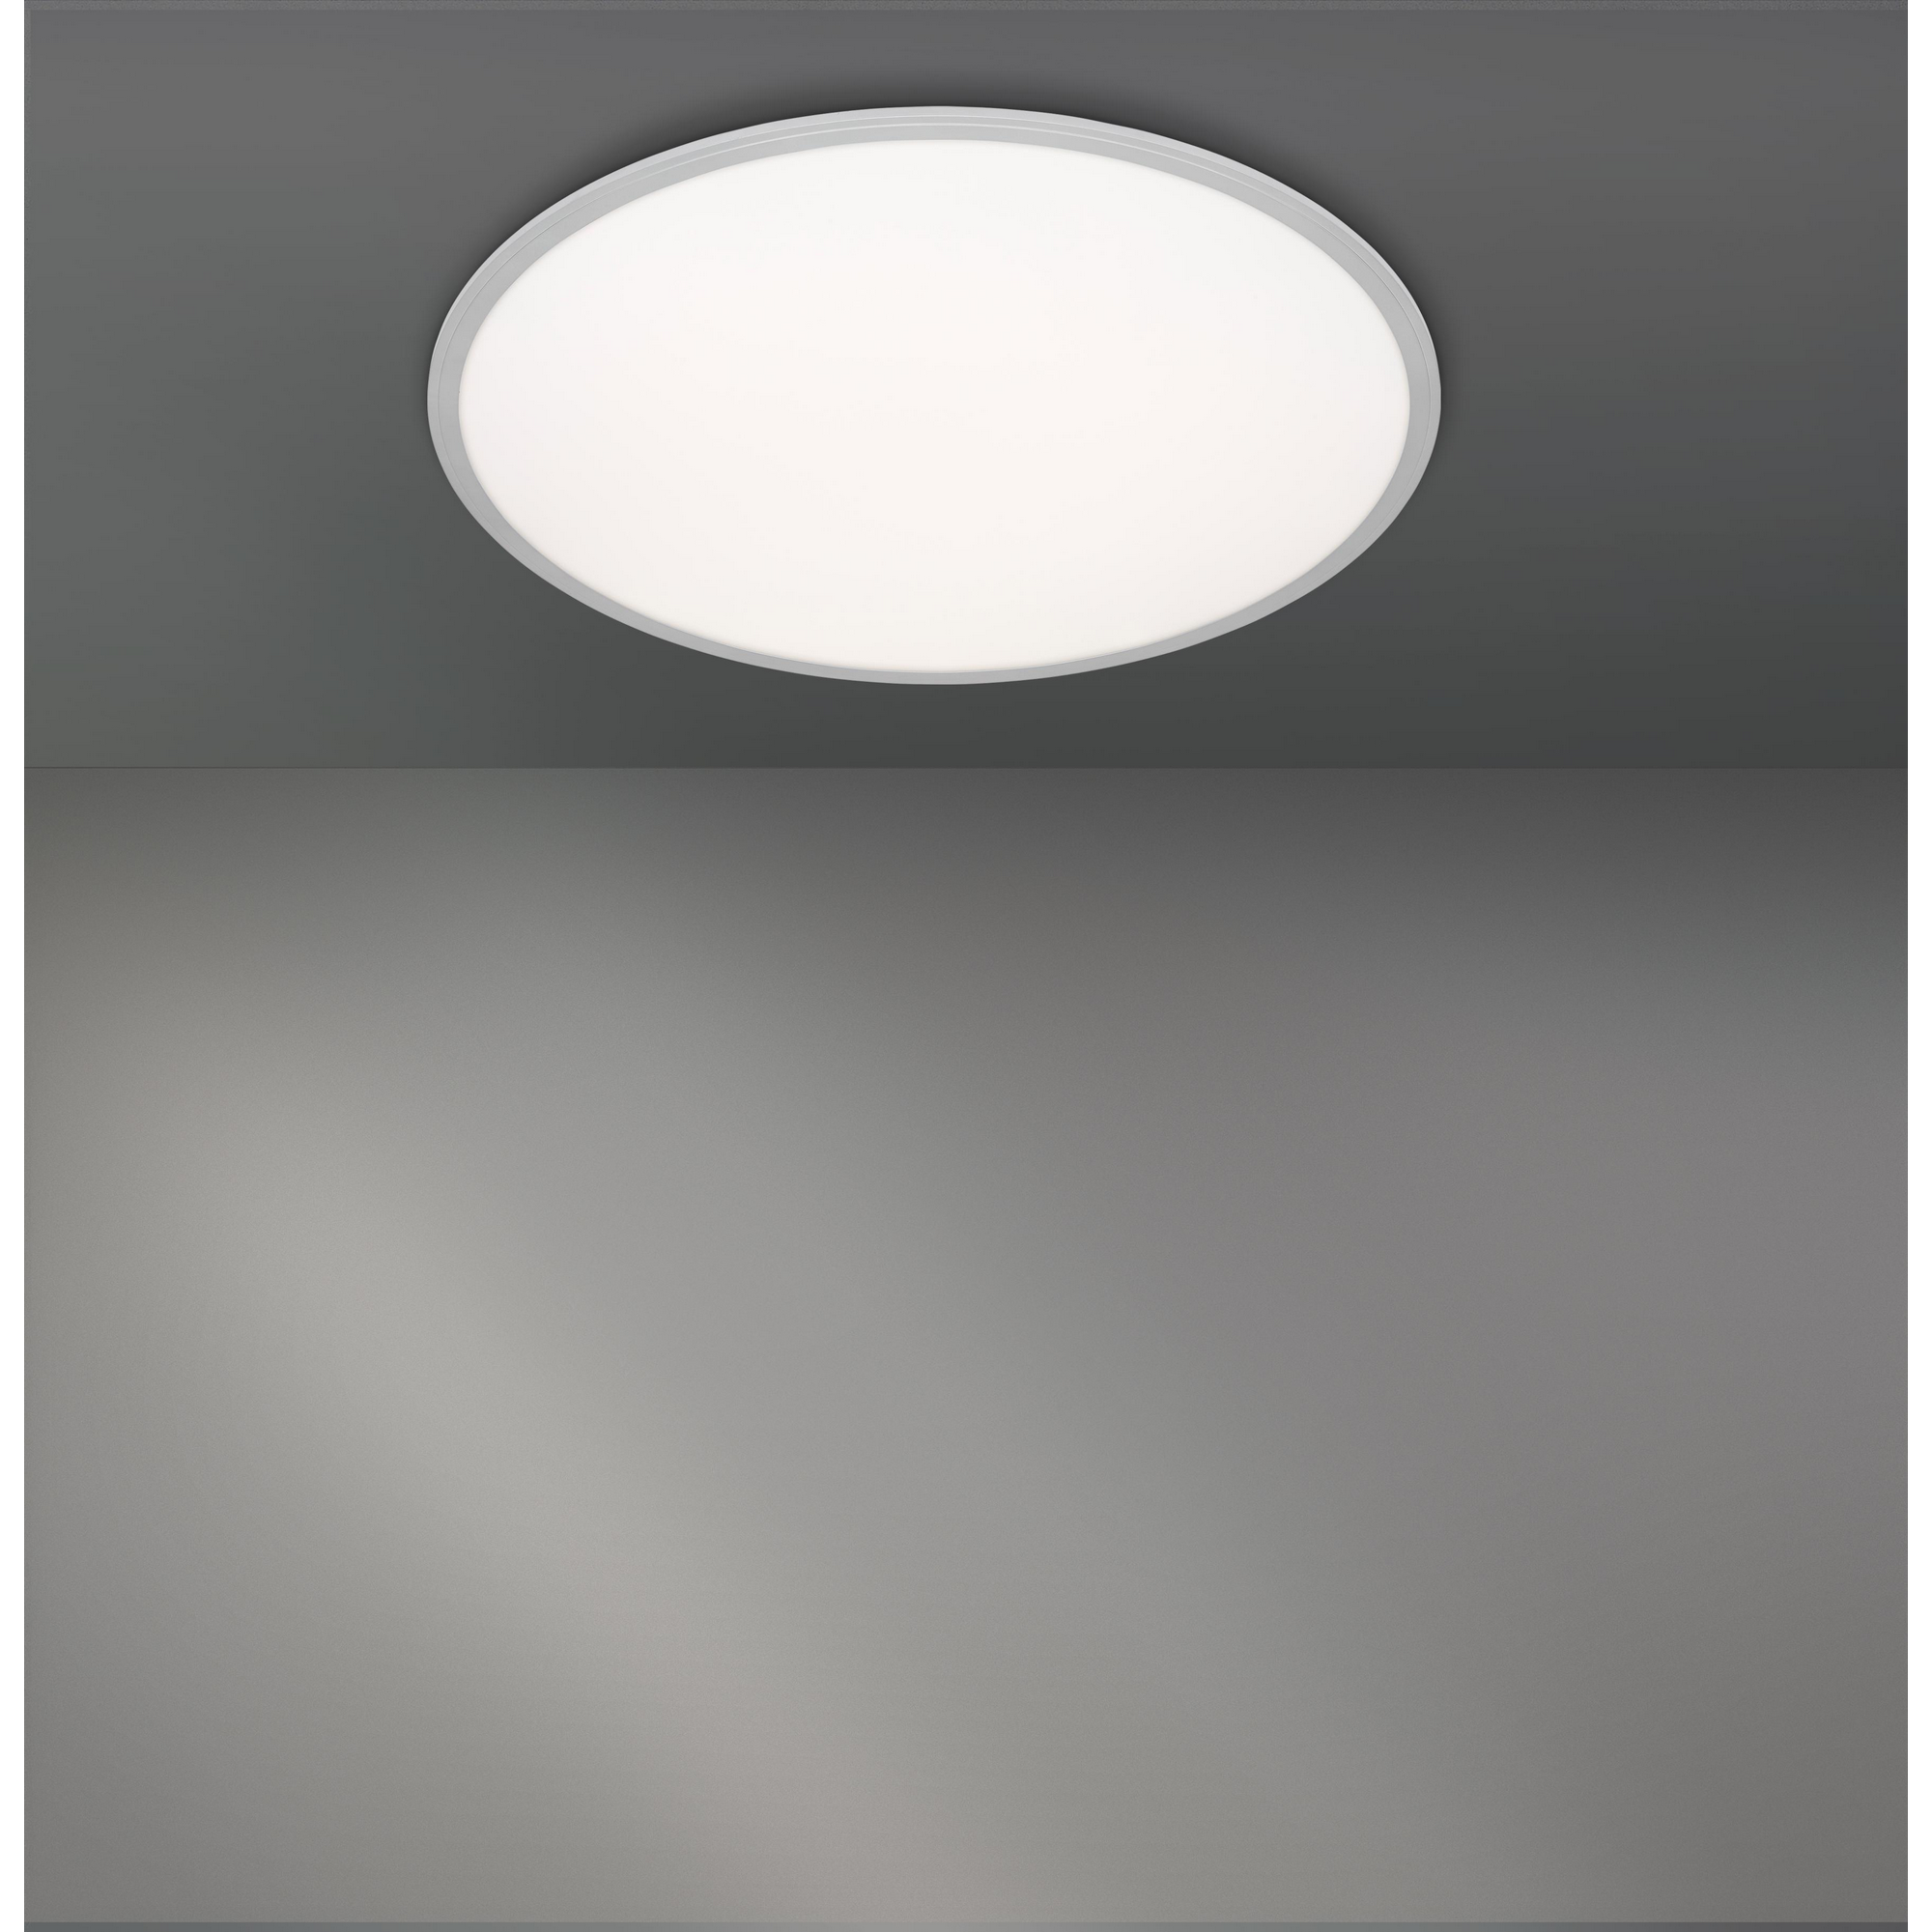 LED-Deckenleuchte weiß/silber Ø 76 cm, mit Fernbedienung + product picture